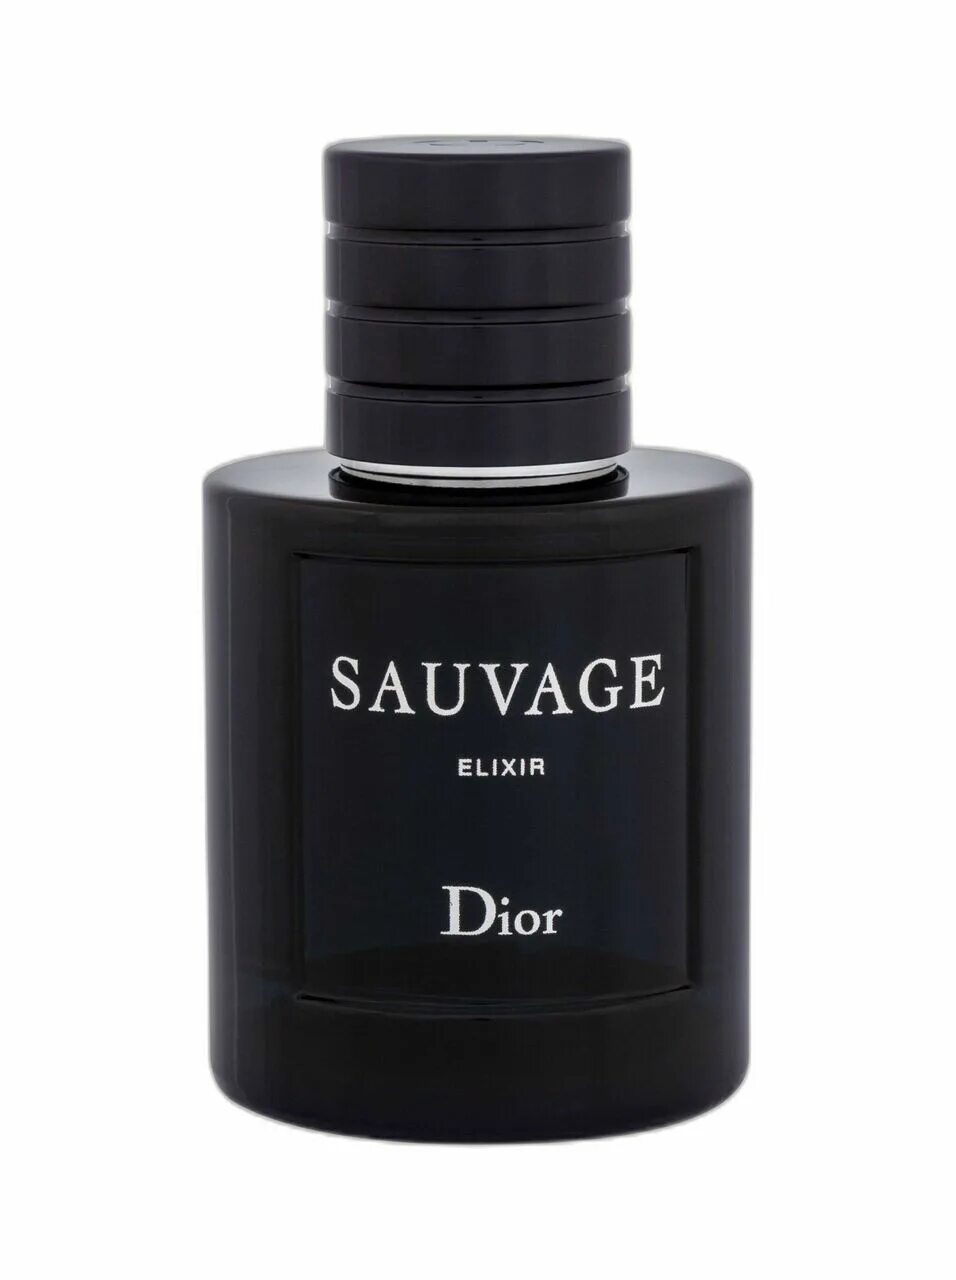 Диор эликсир мужской. Dior sauvage Elixir 60ml. Christian Dior "sauvage Elixir" 60 ml. Dior sauvage Elixir 60 мл. Sauvage Dior Elixir мужские.